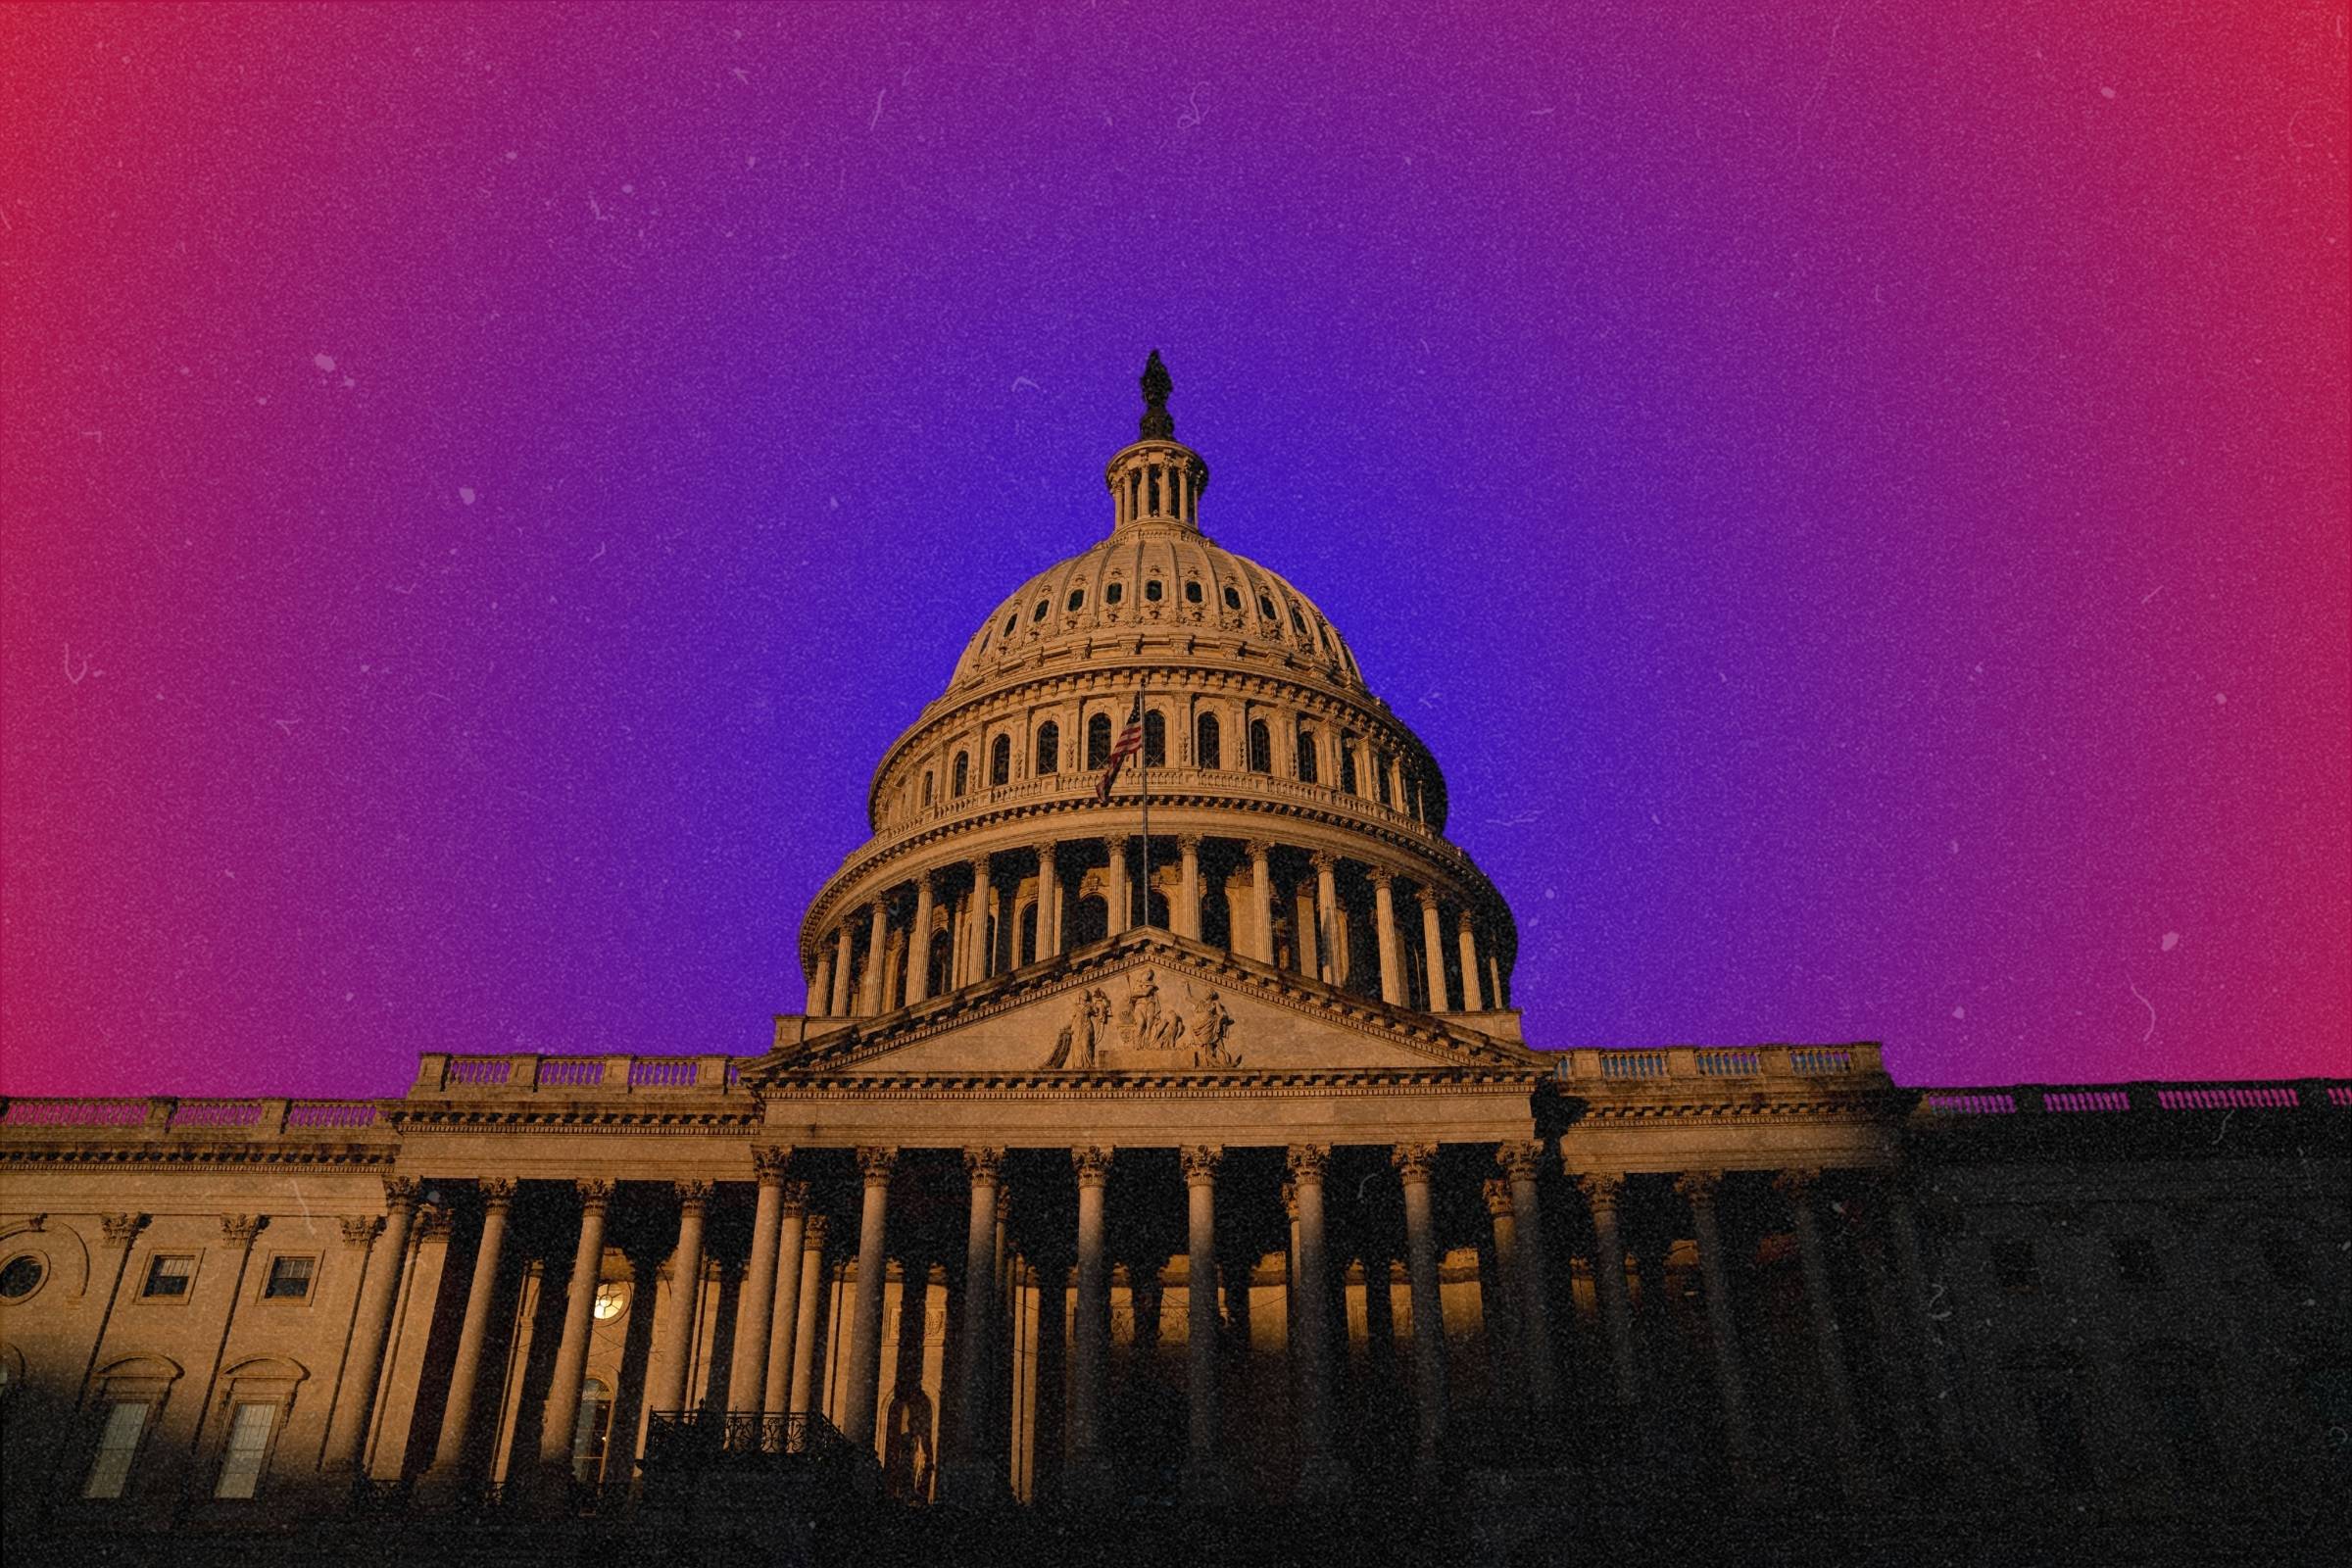 Một bức ảnh minh họa tòa nhà Quốc hội Hoa Kỳ trên nền màu gradient với màu xanh chiếm ưu thế so với màu đỏ